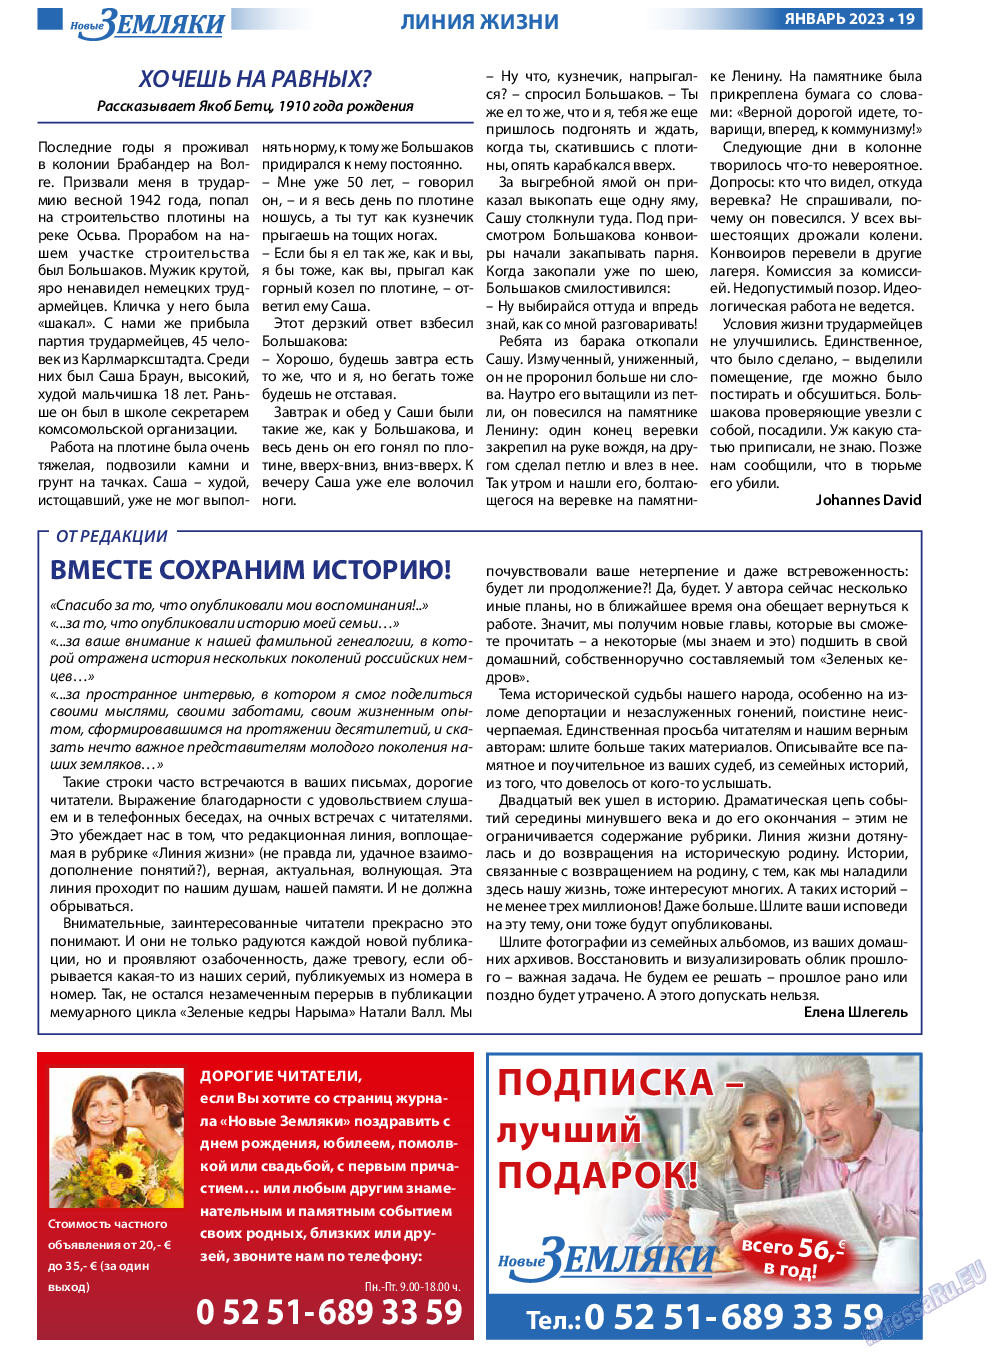 Новые Земляки, газета. 2023 №1 стр.19